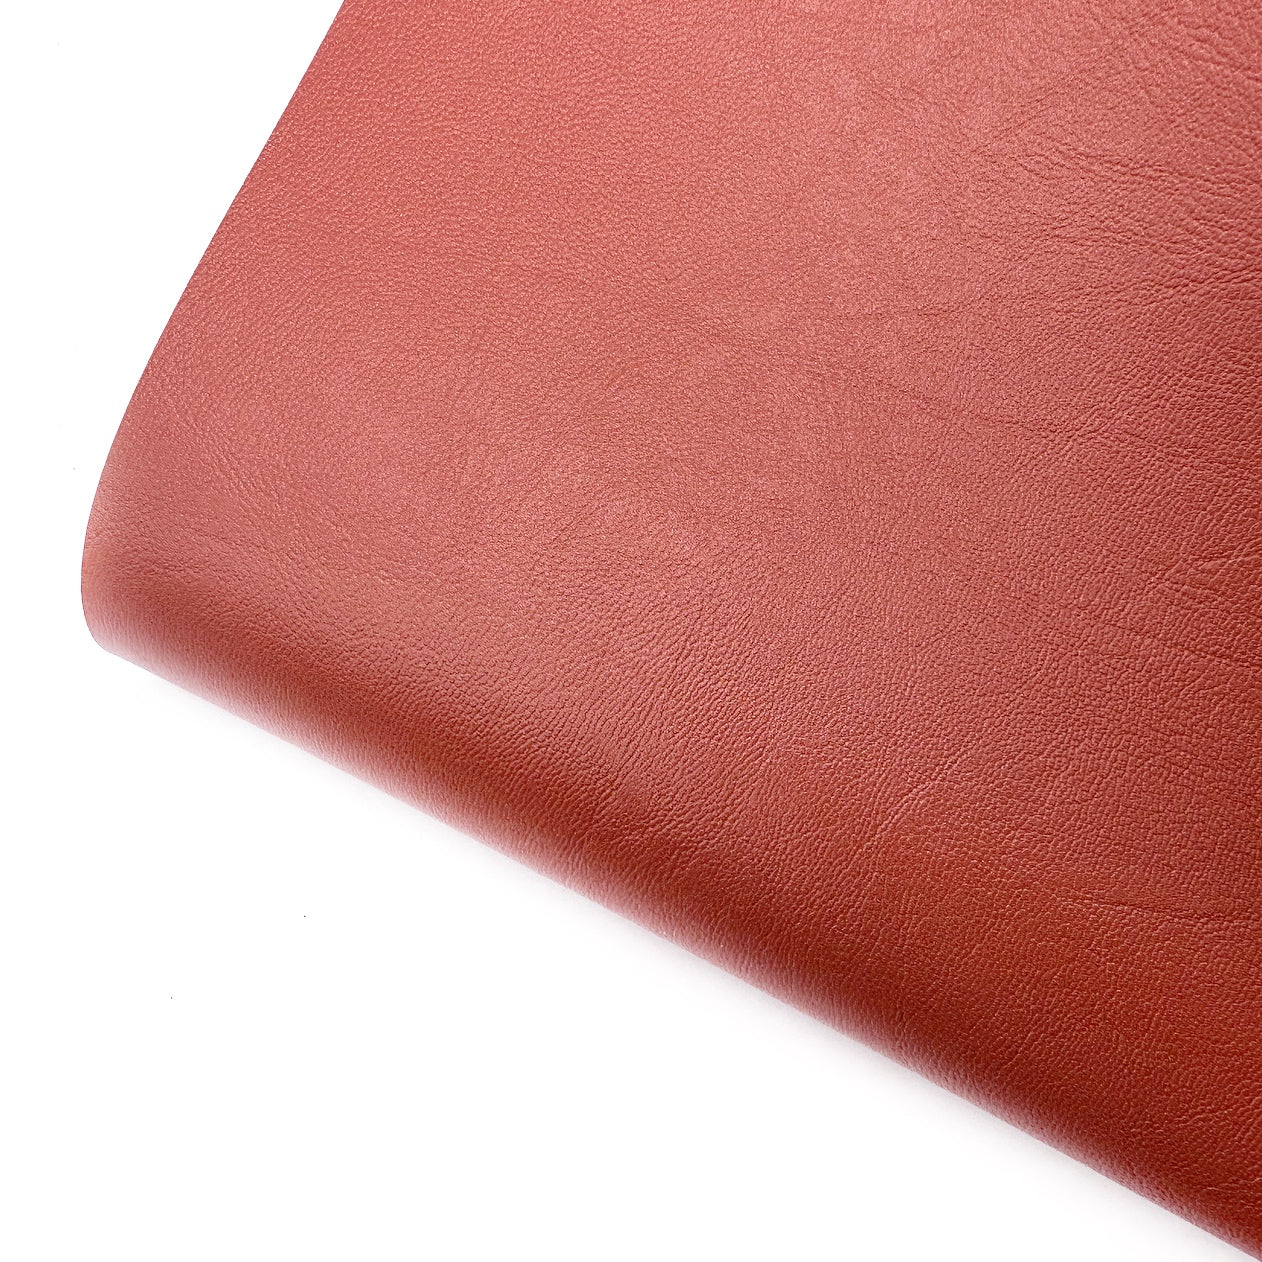 Wild West Core Colour Premium Faux Leather Fabric Sheets